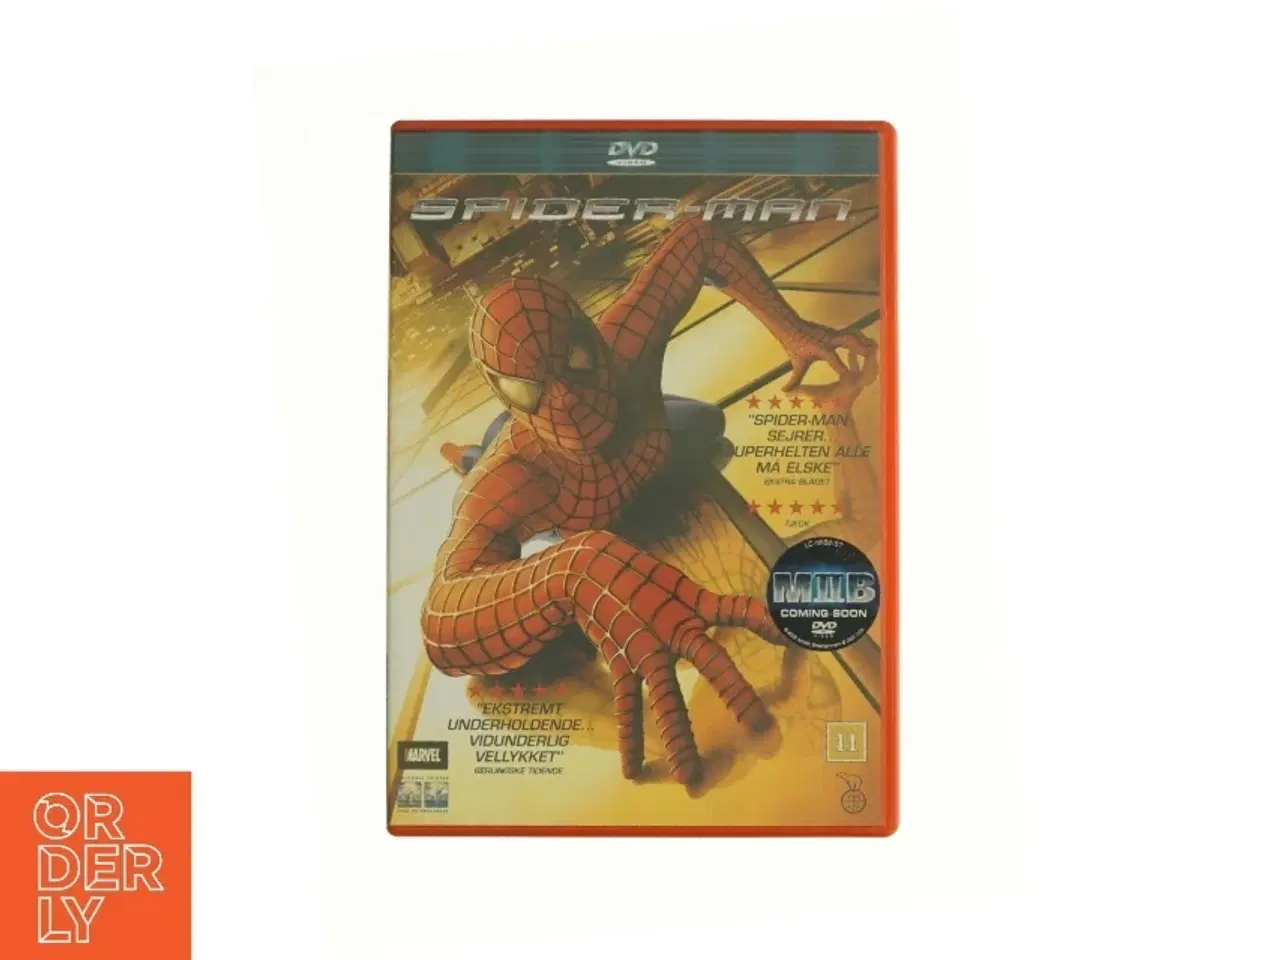 Billede 1 - Spider-man fra DVD